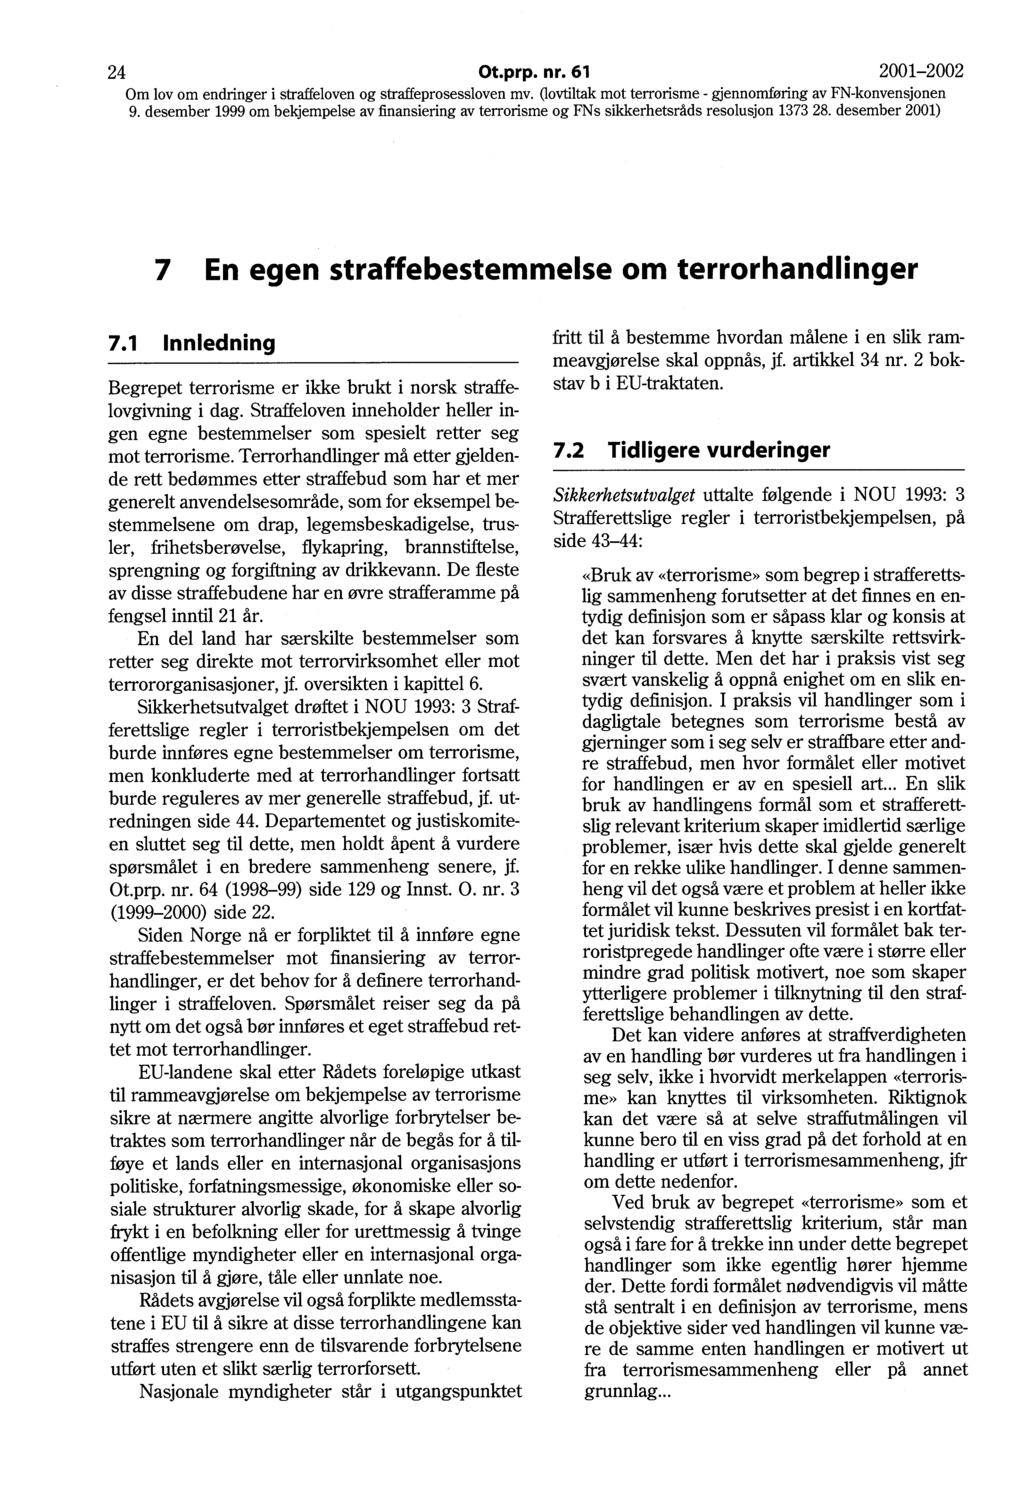 24 Ot.prp. nr. 61 2001-2002 7 En egen straffebestemmelse om terrorhandlinger 7.1 Innledning Begrepet terrorisme er ikke brukt i norsk straffelovgivning i dag.